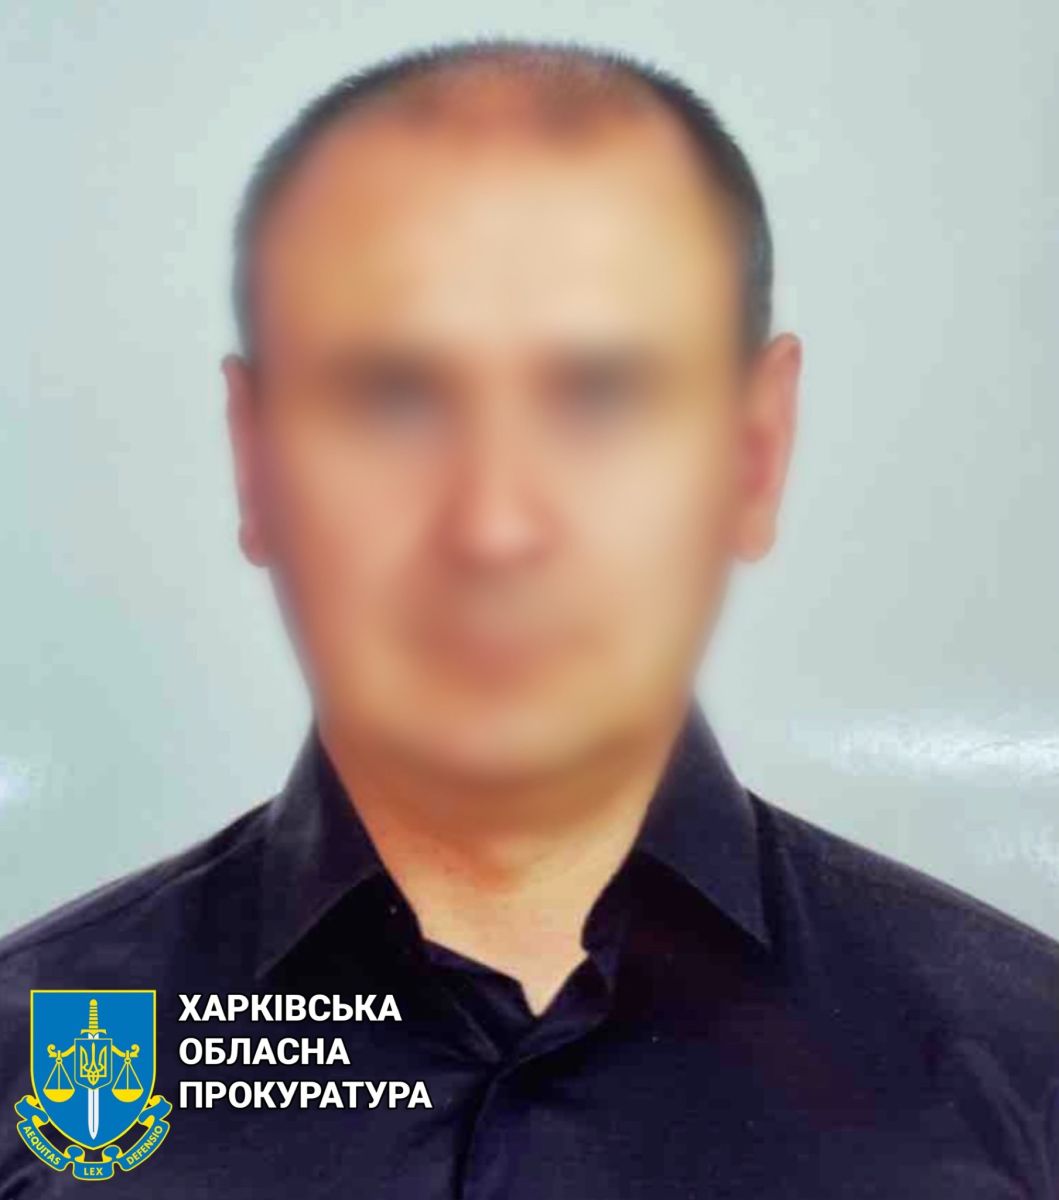 Новини Харкова: повідомлено про підозру експоліціянту з Куп'янська